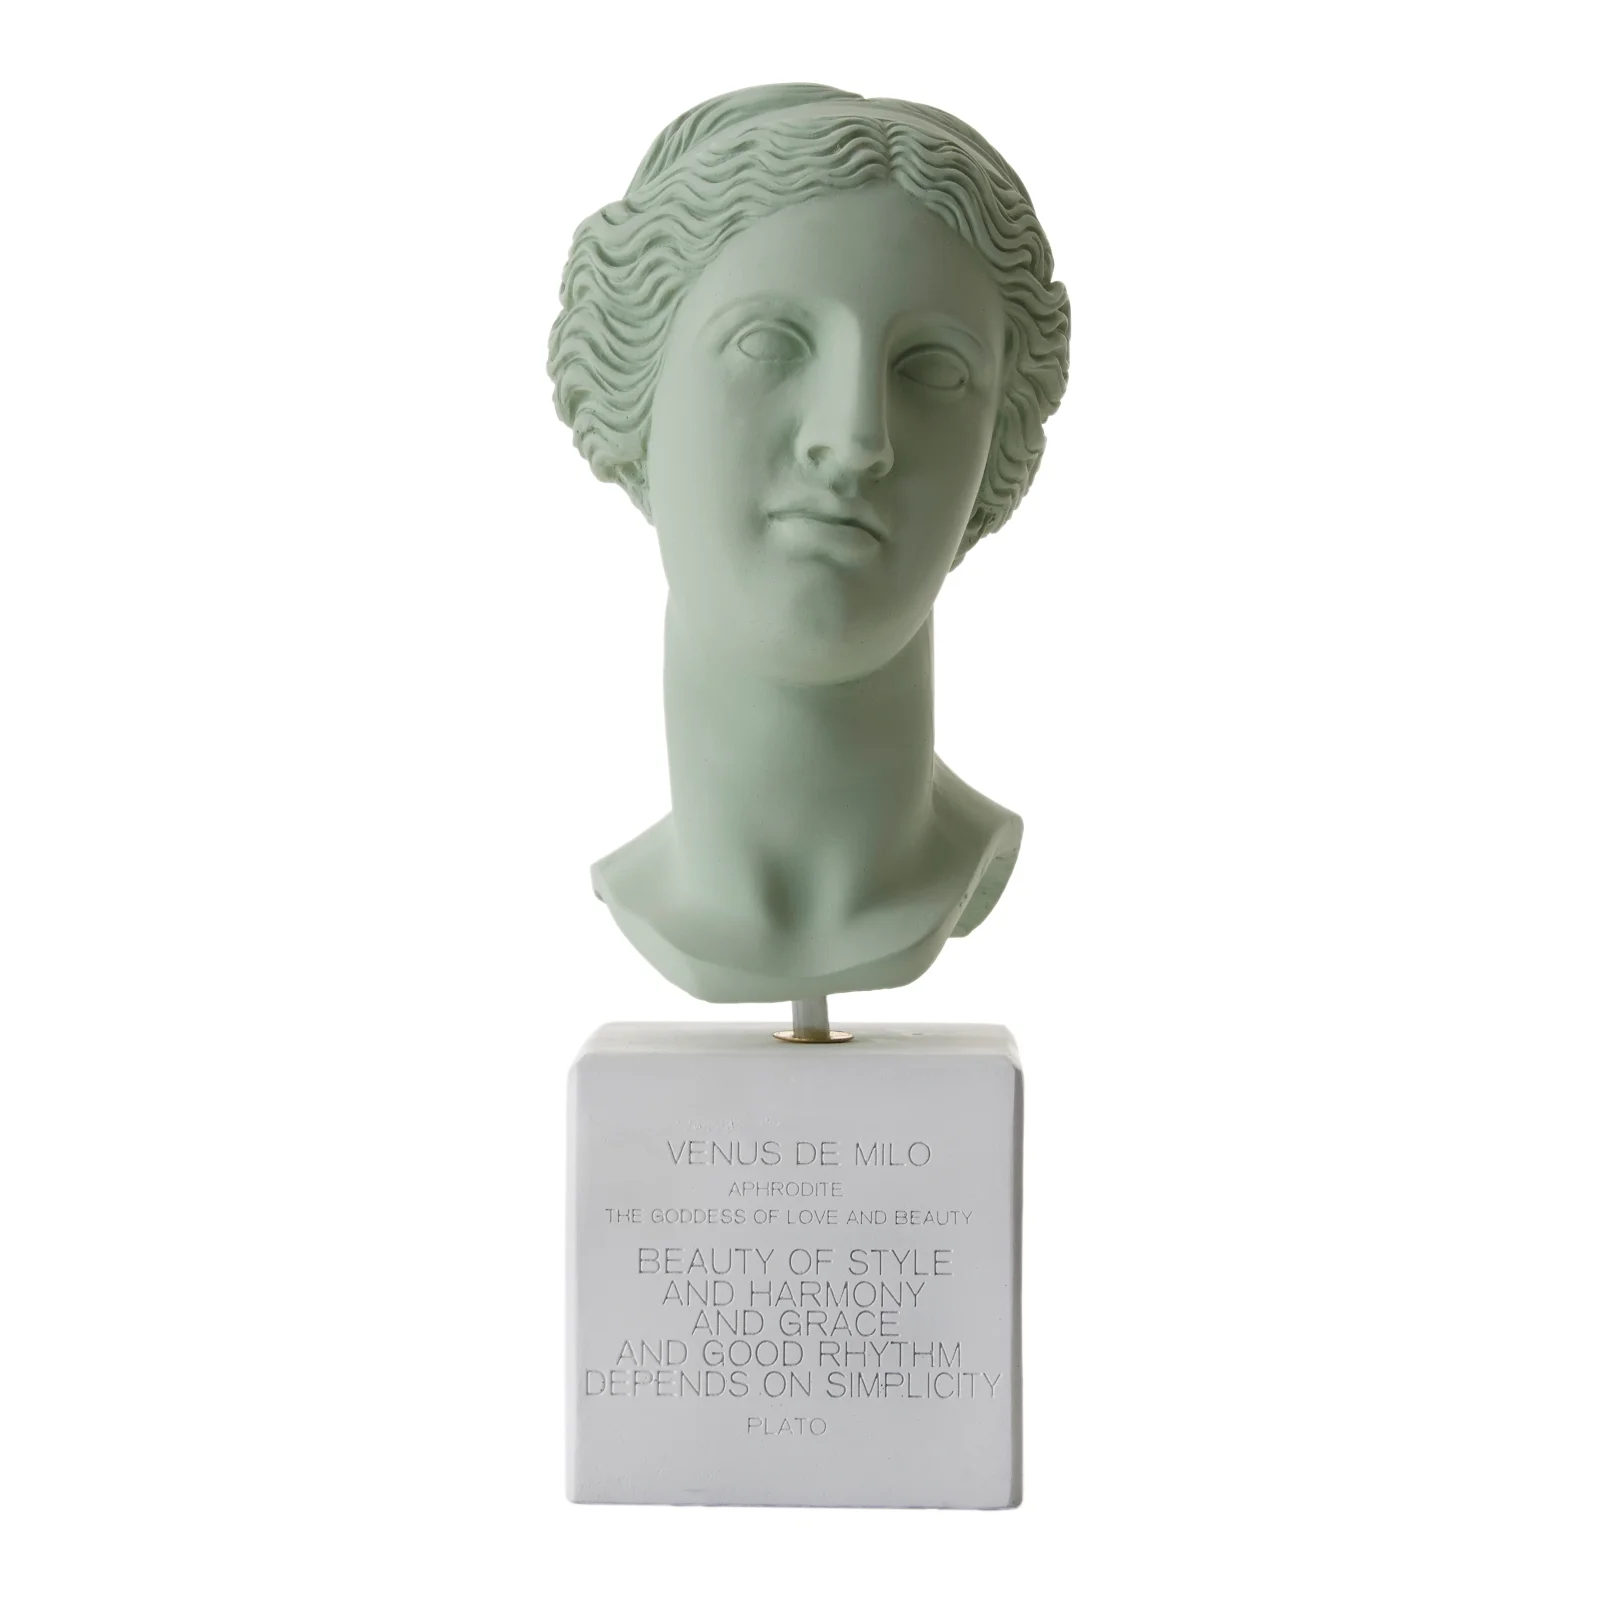 Sophia Enjoy Thinking Venus Head Statue - Vintage Green - Medium Image 1